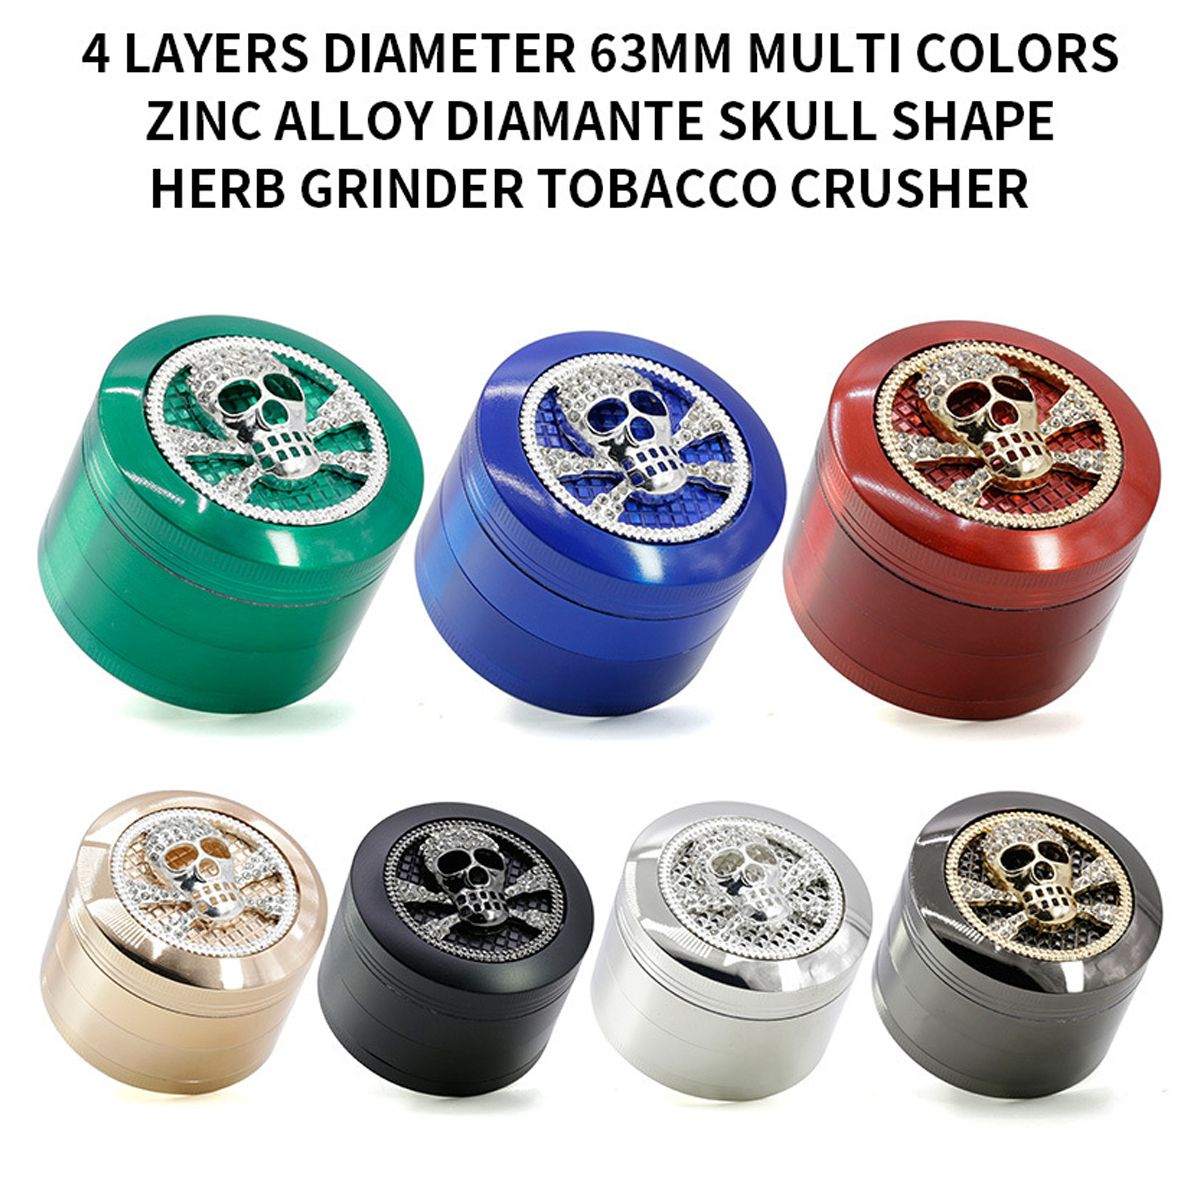 Multi-Color-4Layers-63mm-Zinc-Alloy-Skull-Shape-With-Drawer-Herb-Grinder-Tobaccos-Grinder-Herb-Grind-1659974